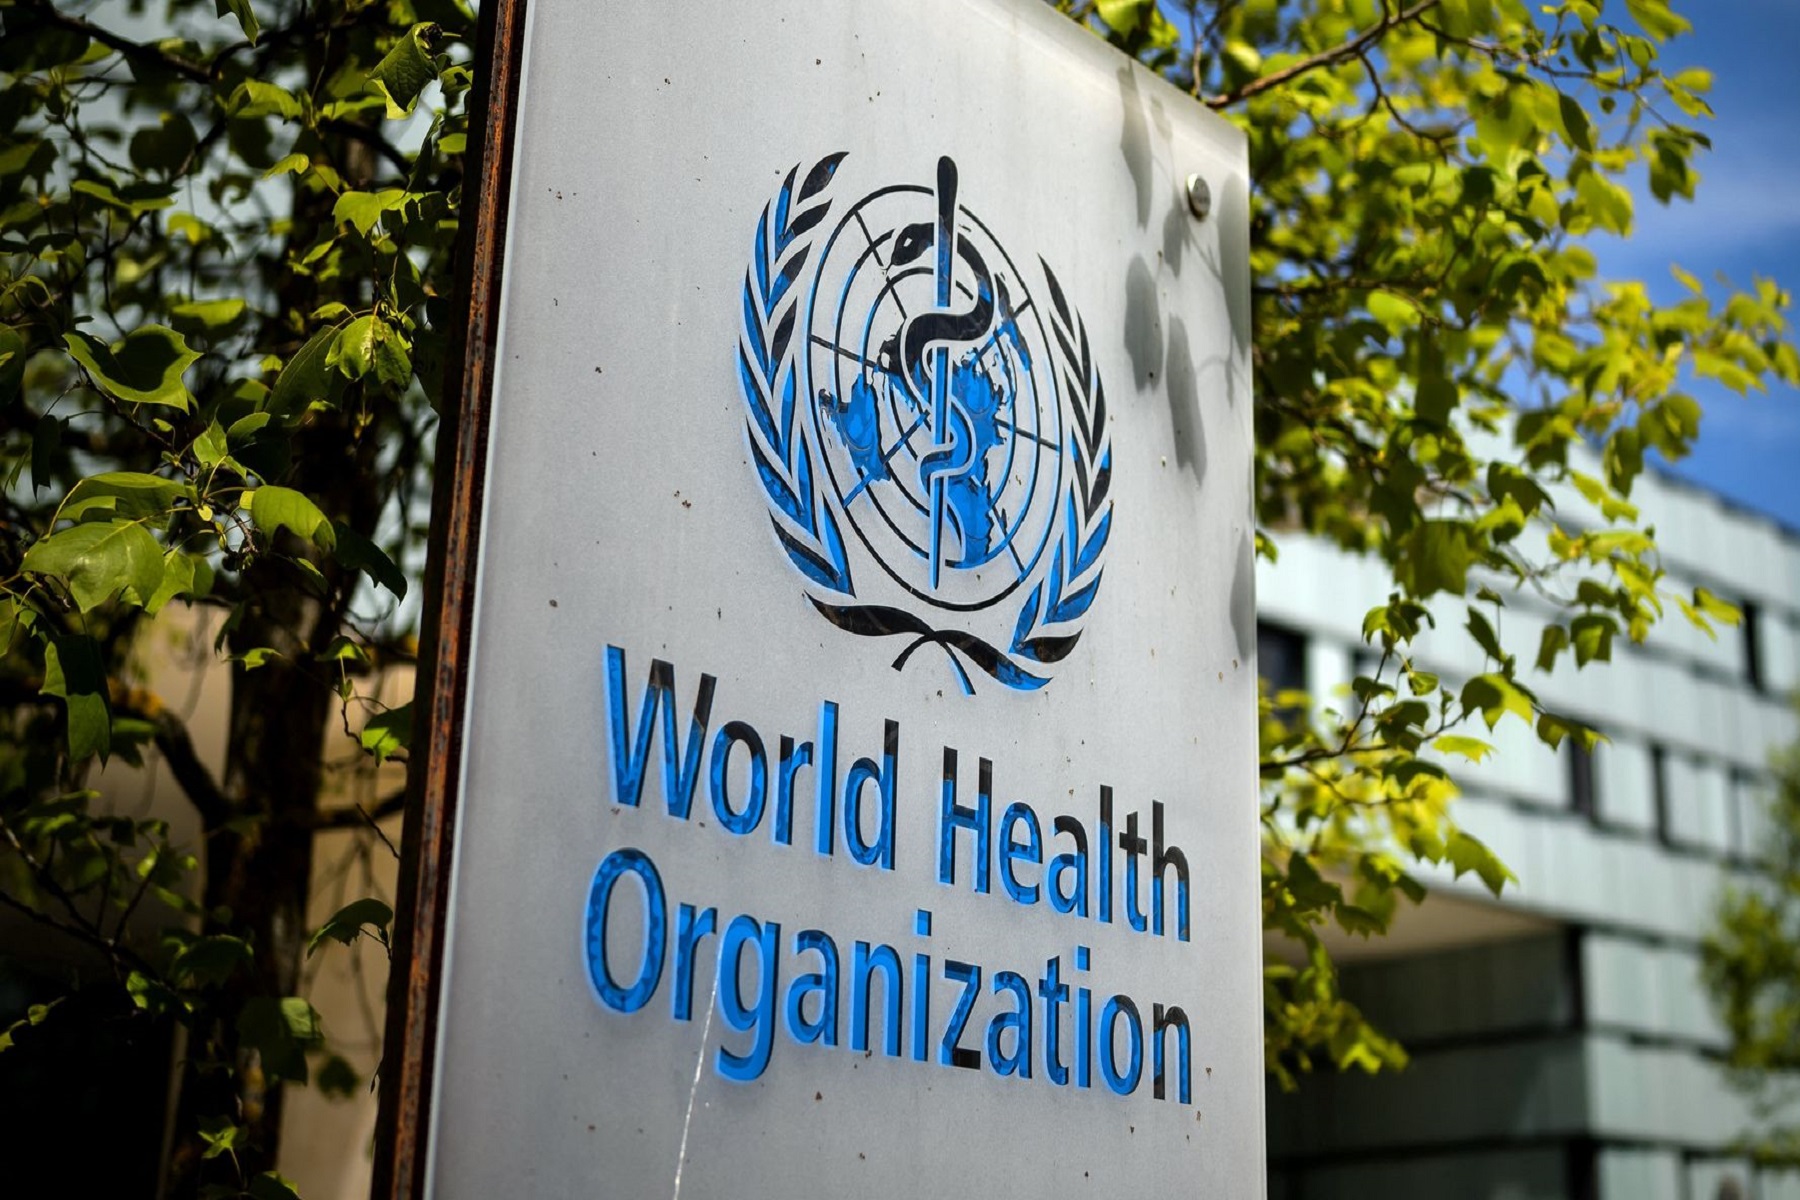 Παγκόσμιος Οργανισμός Υγείας: Δίνει ονόματα από την ελληνική αλφάβητο στις παραλλαγές του κορωνοϊού